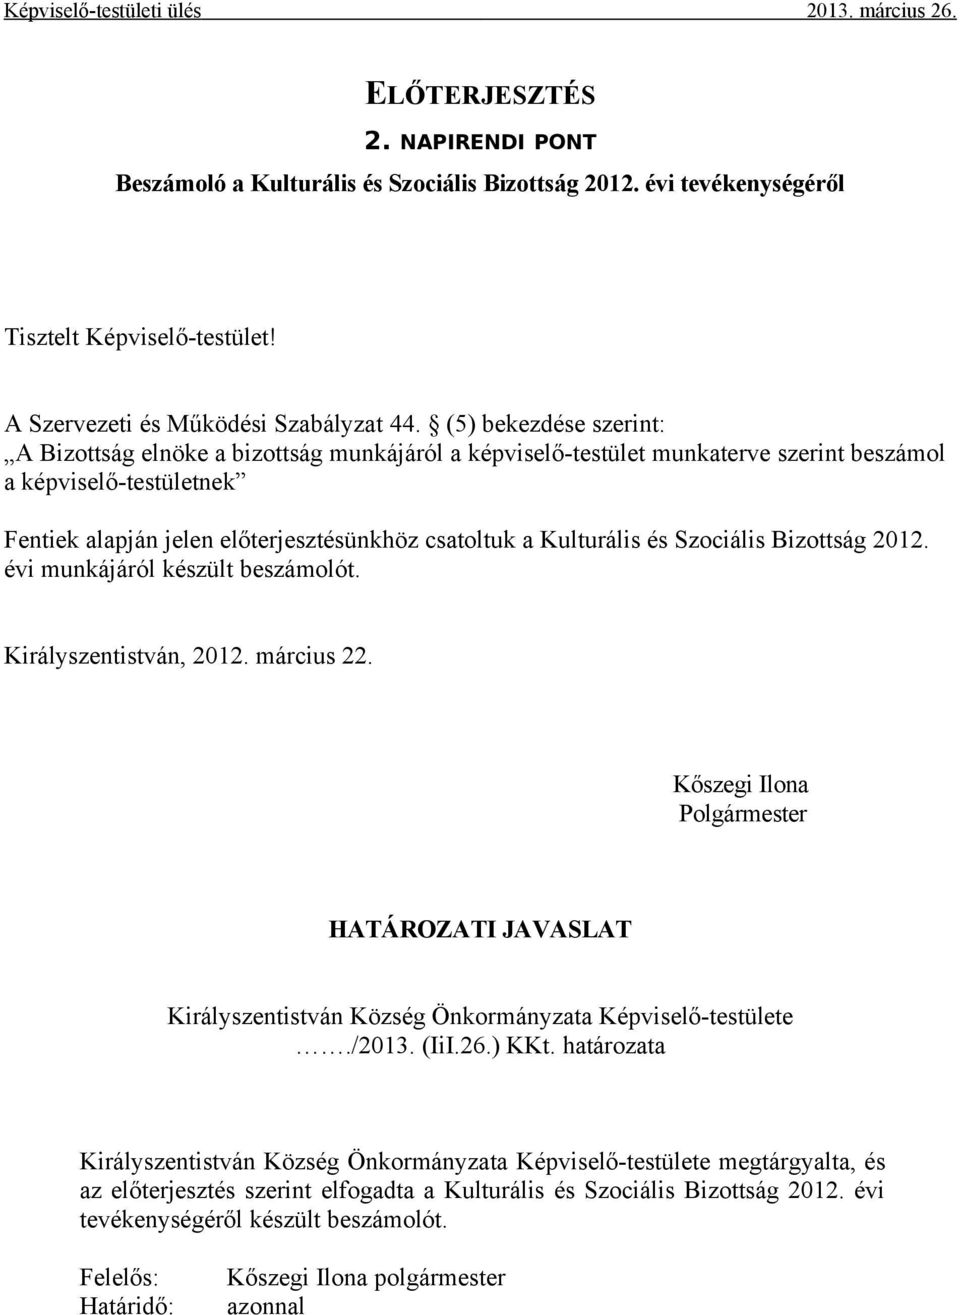 Kulturális és Szociális Bizottság 2012. évi munkájáról készült beszámolót. Királyszentistván, 2012. március 22.